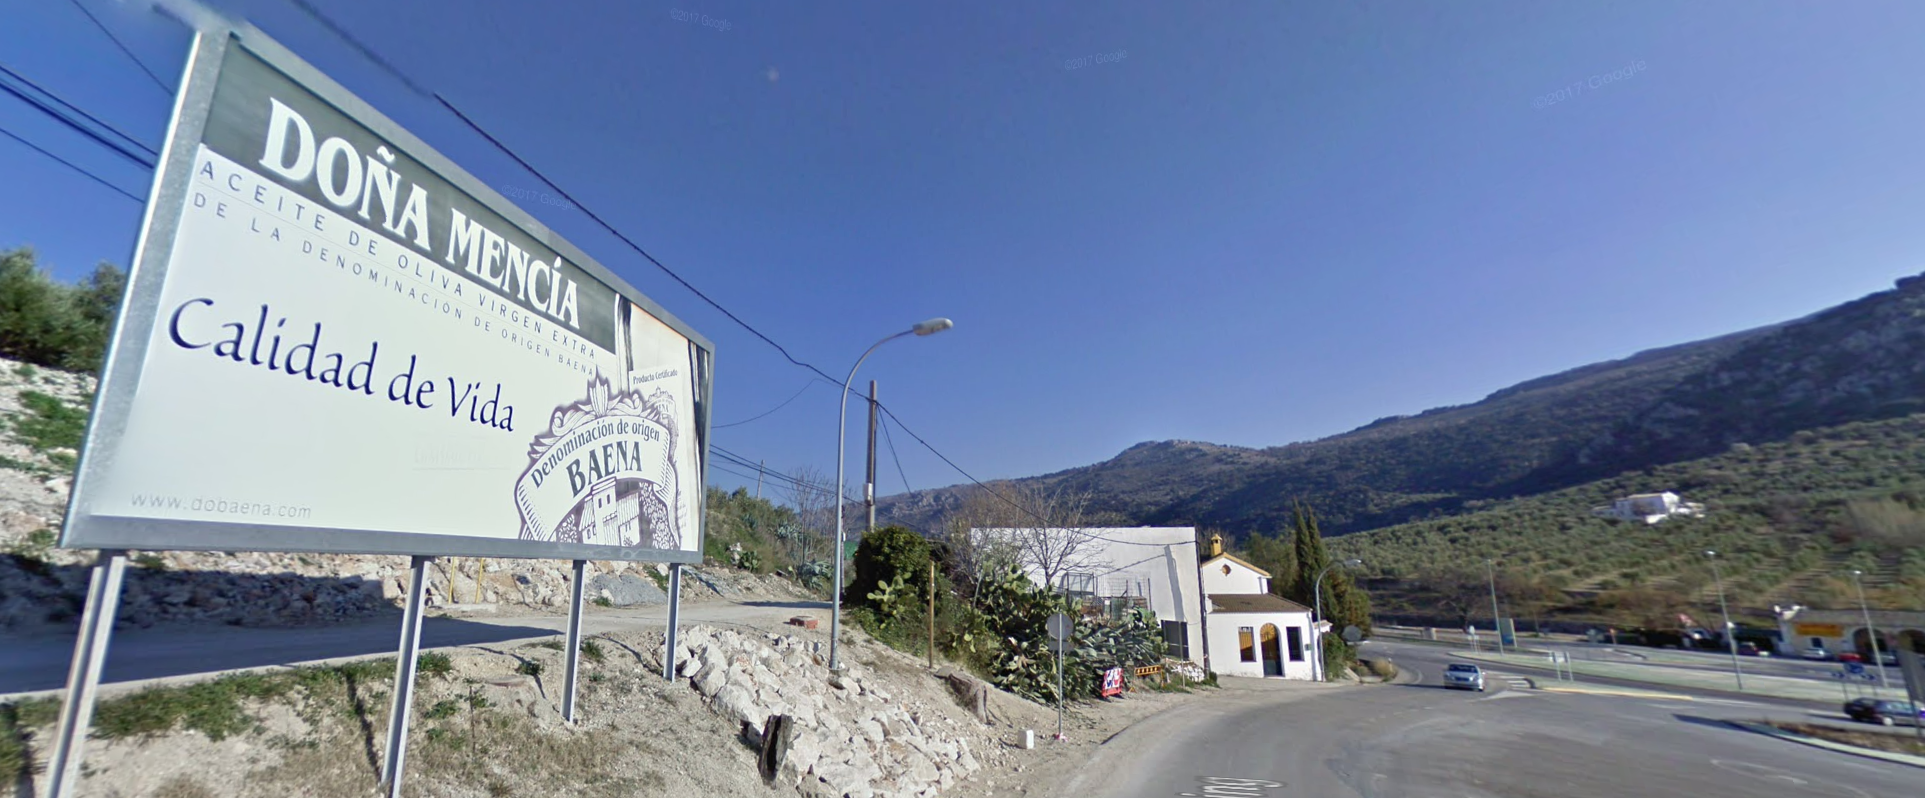 Doña Mencía, el municipio con la mayor tasa de incidencia de toda España, en una imagen de Google Maps.